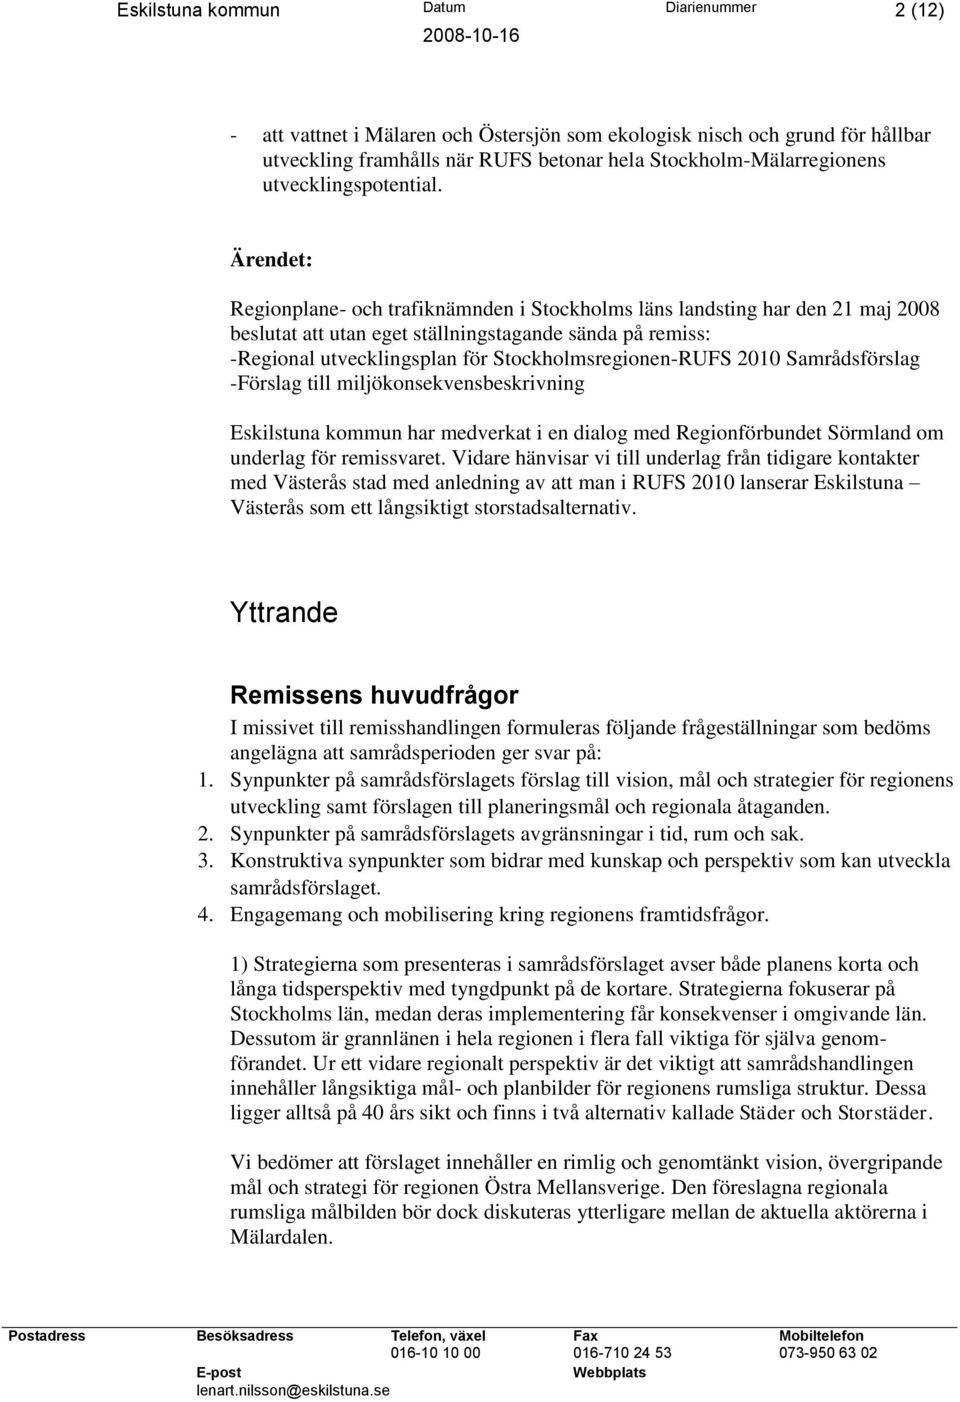 Ärendet: Regionplane- och trafiknämnden i Stockholms läns landsting har den 21 maj 2008 beslutat att utan eget ställningstagande sända på remiss: -Regional utvecklingsplan för Stockholmsregionen-RUFS